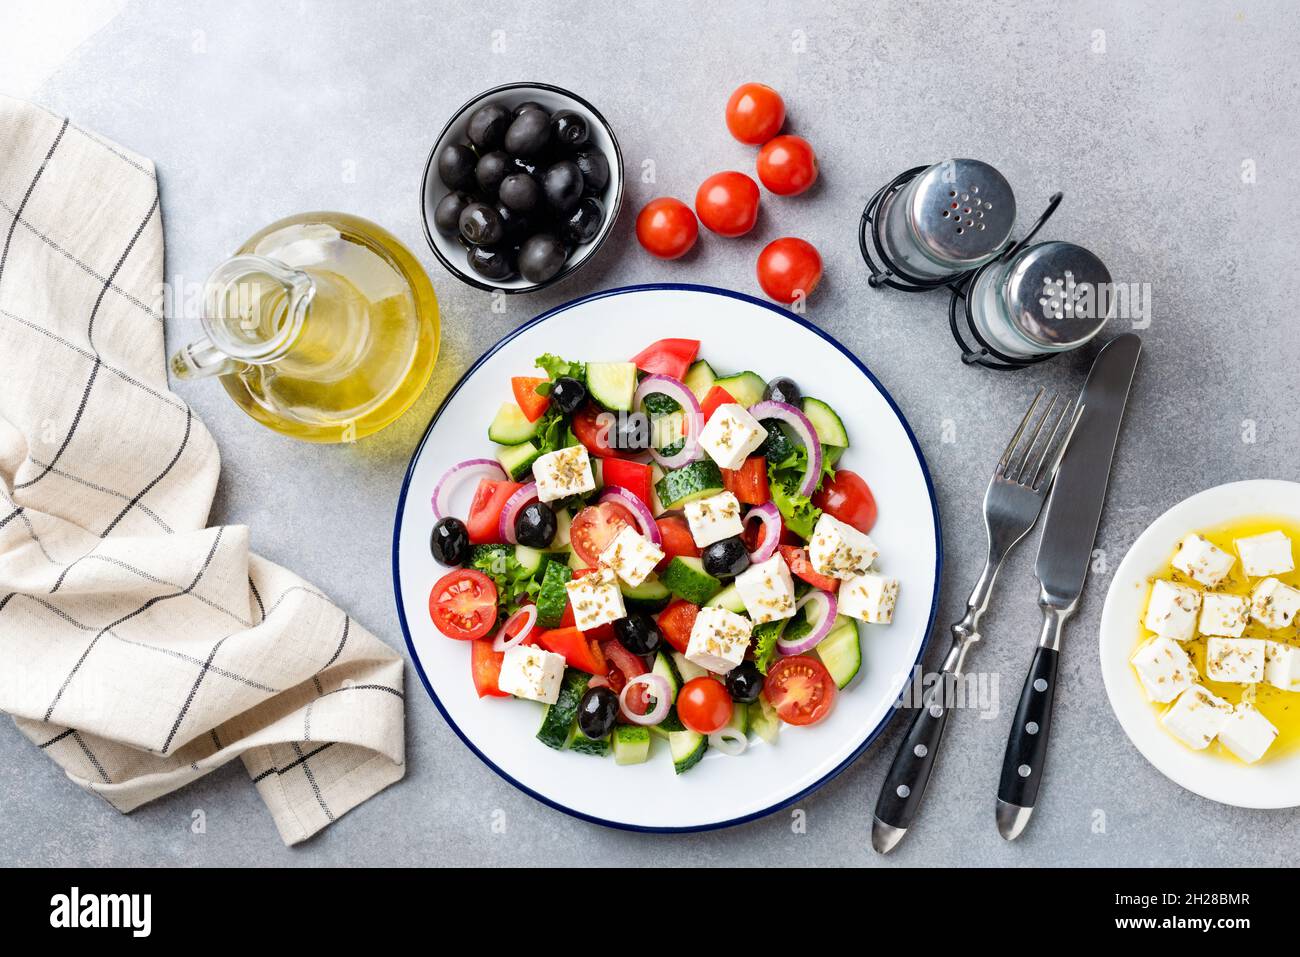 Insalata greca con formaggio feta e olive nere sul piatto, vista dall'alto. Insalata mediterranea sana Foto Stock